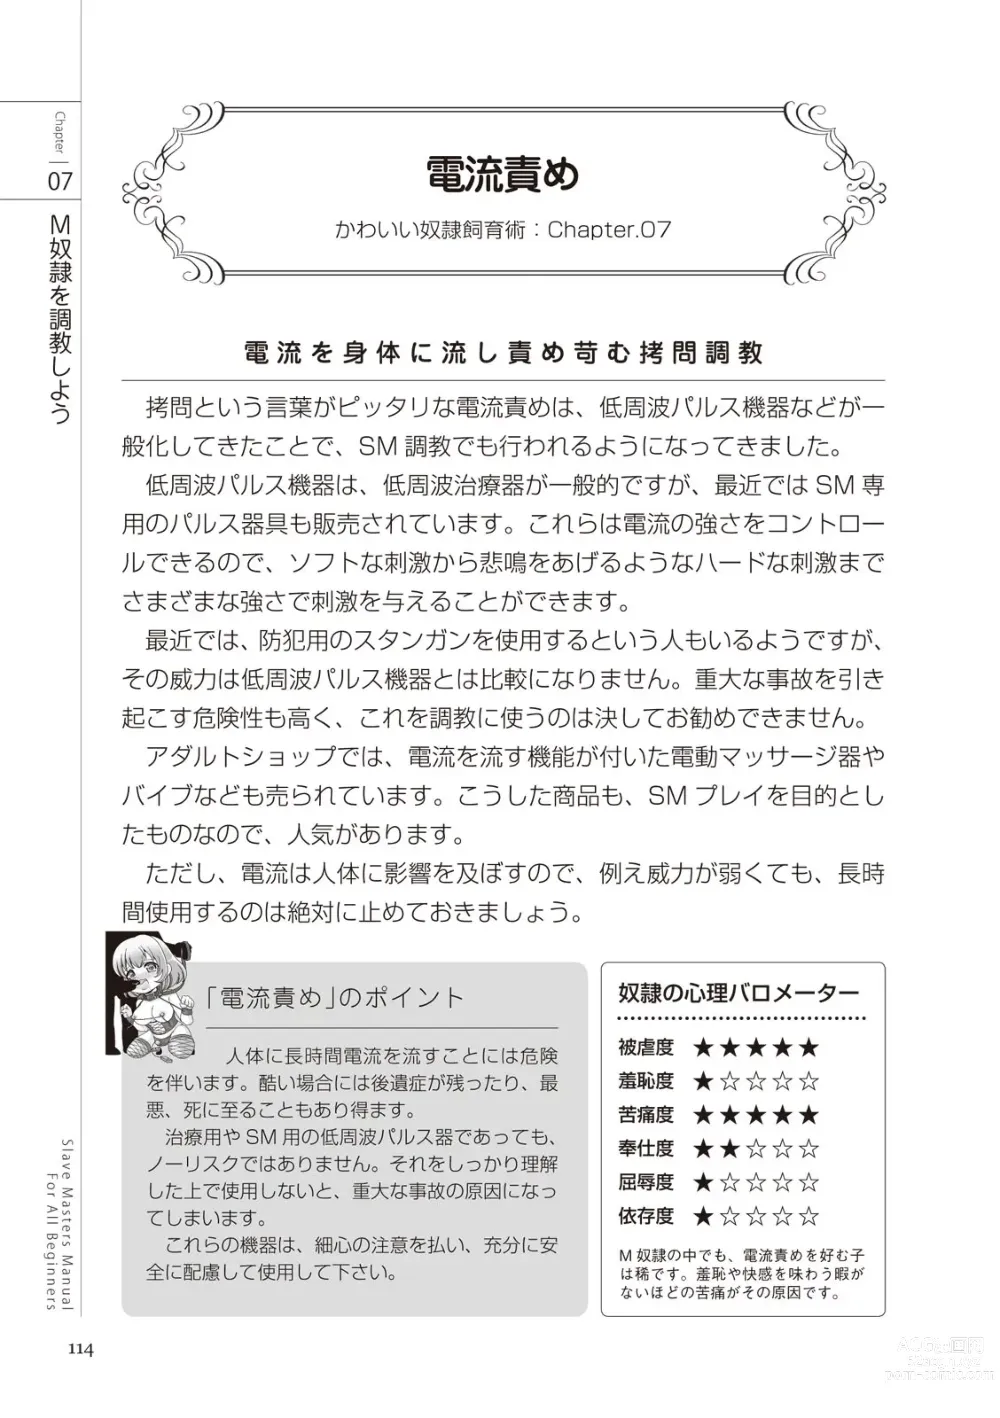 Page 114 of manga Zero kara Hajimeru SM Manual Kawaii Dorei Shiikujutsu